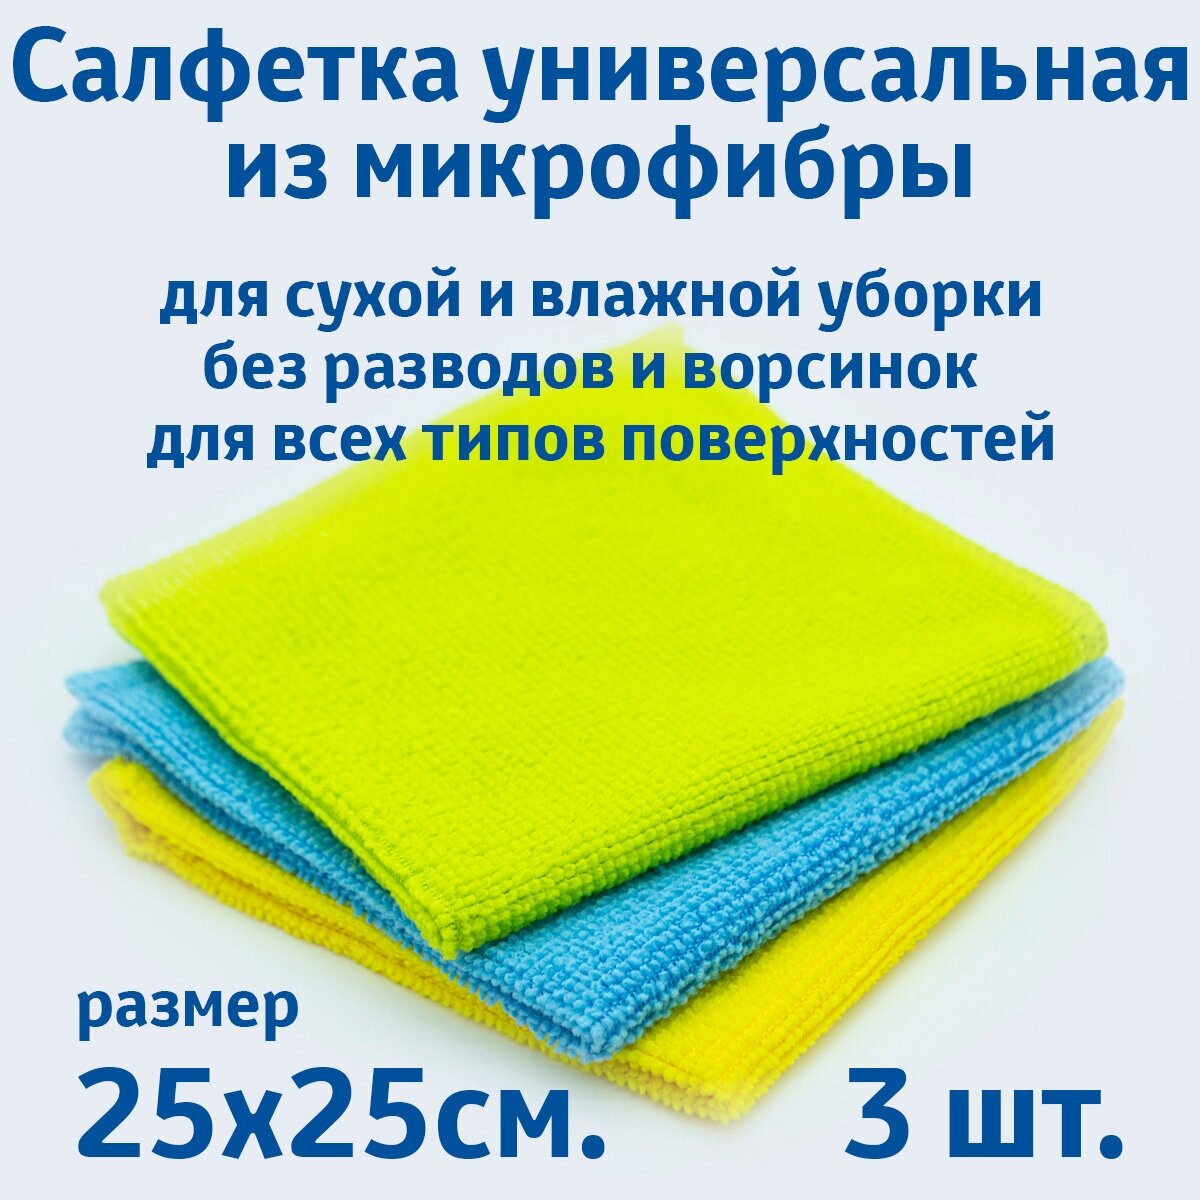 Салфетки для уборки из микрофибры универсальные 3 шт. в упаковке размер 25х25см.